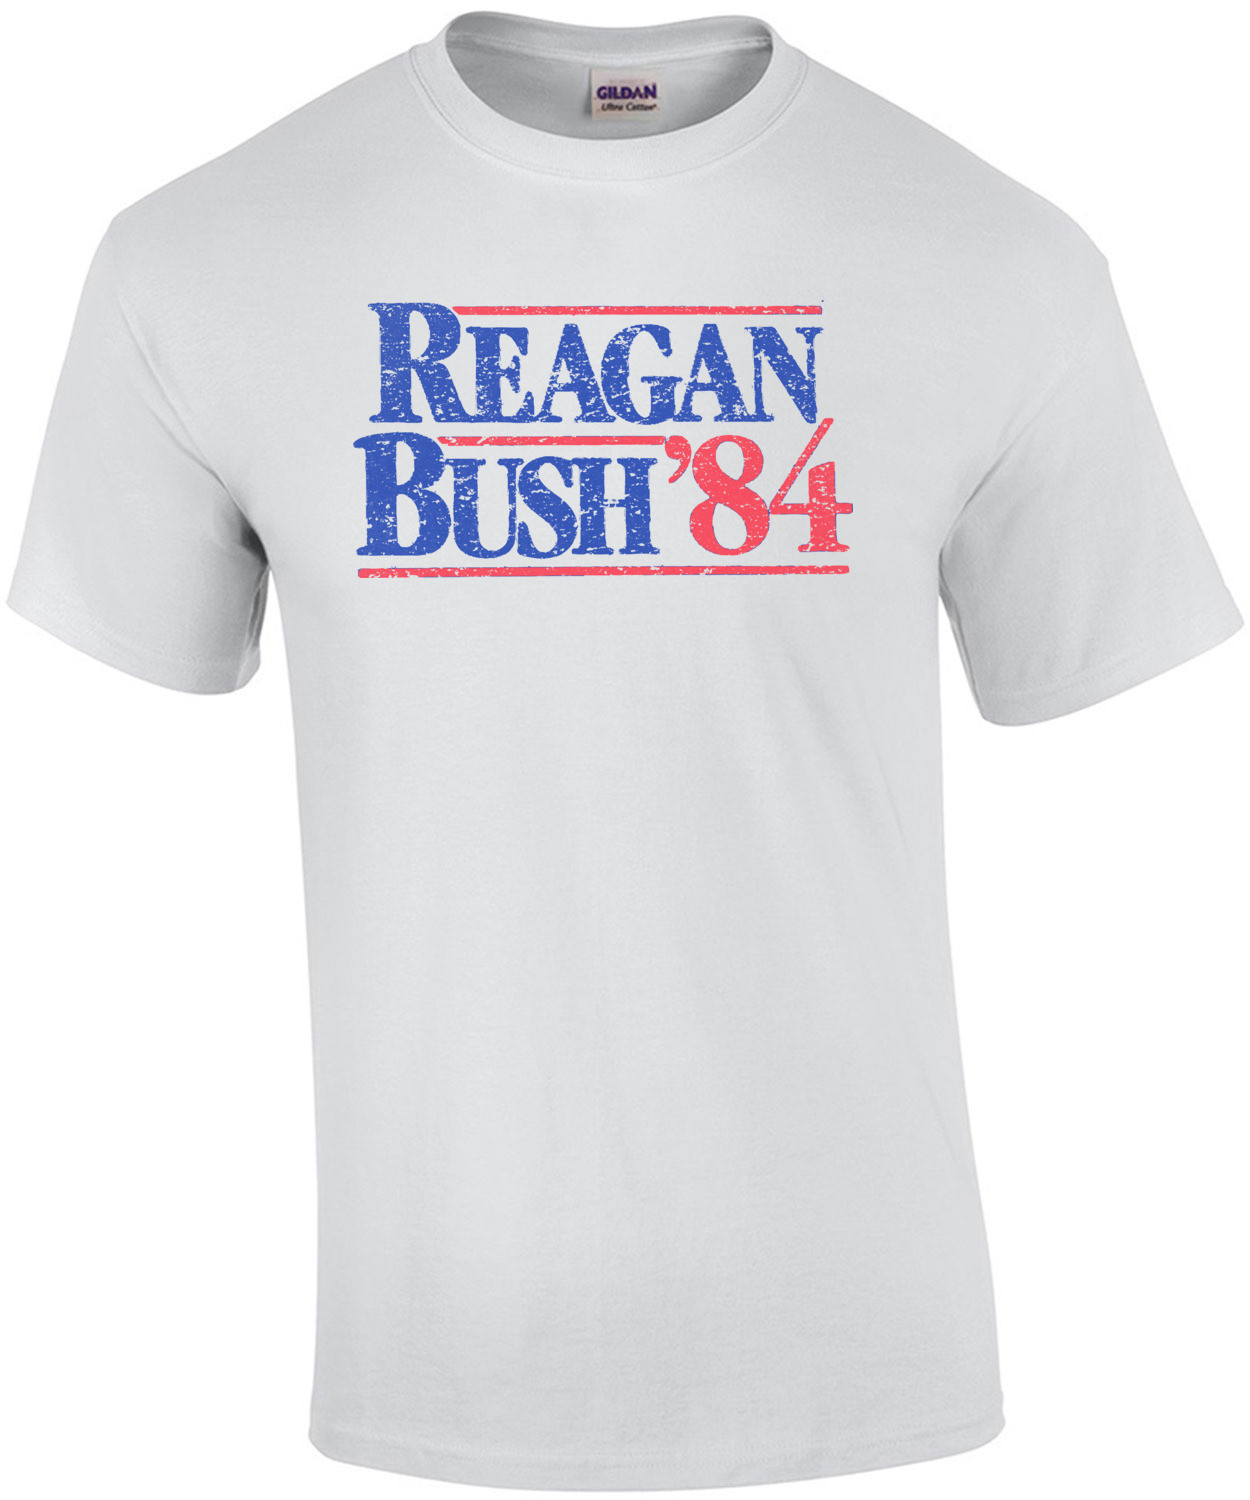 Reagan Bush '84 Shirt